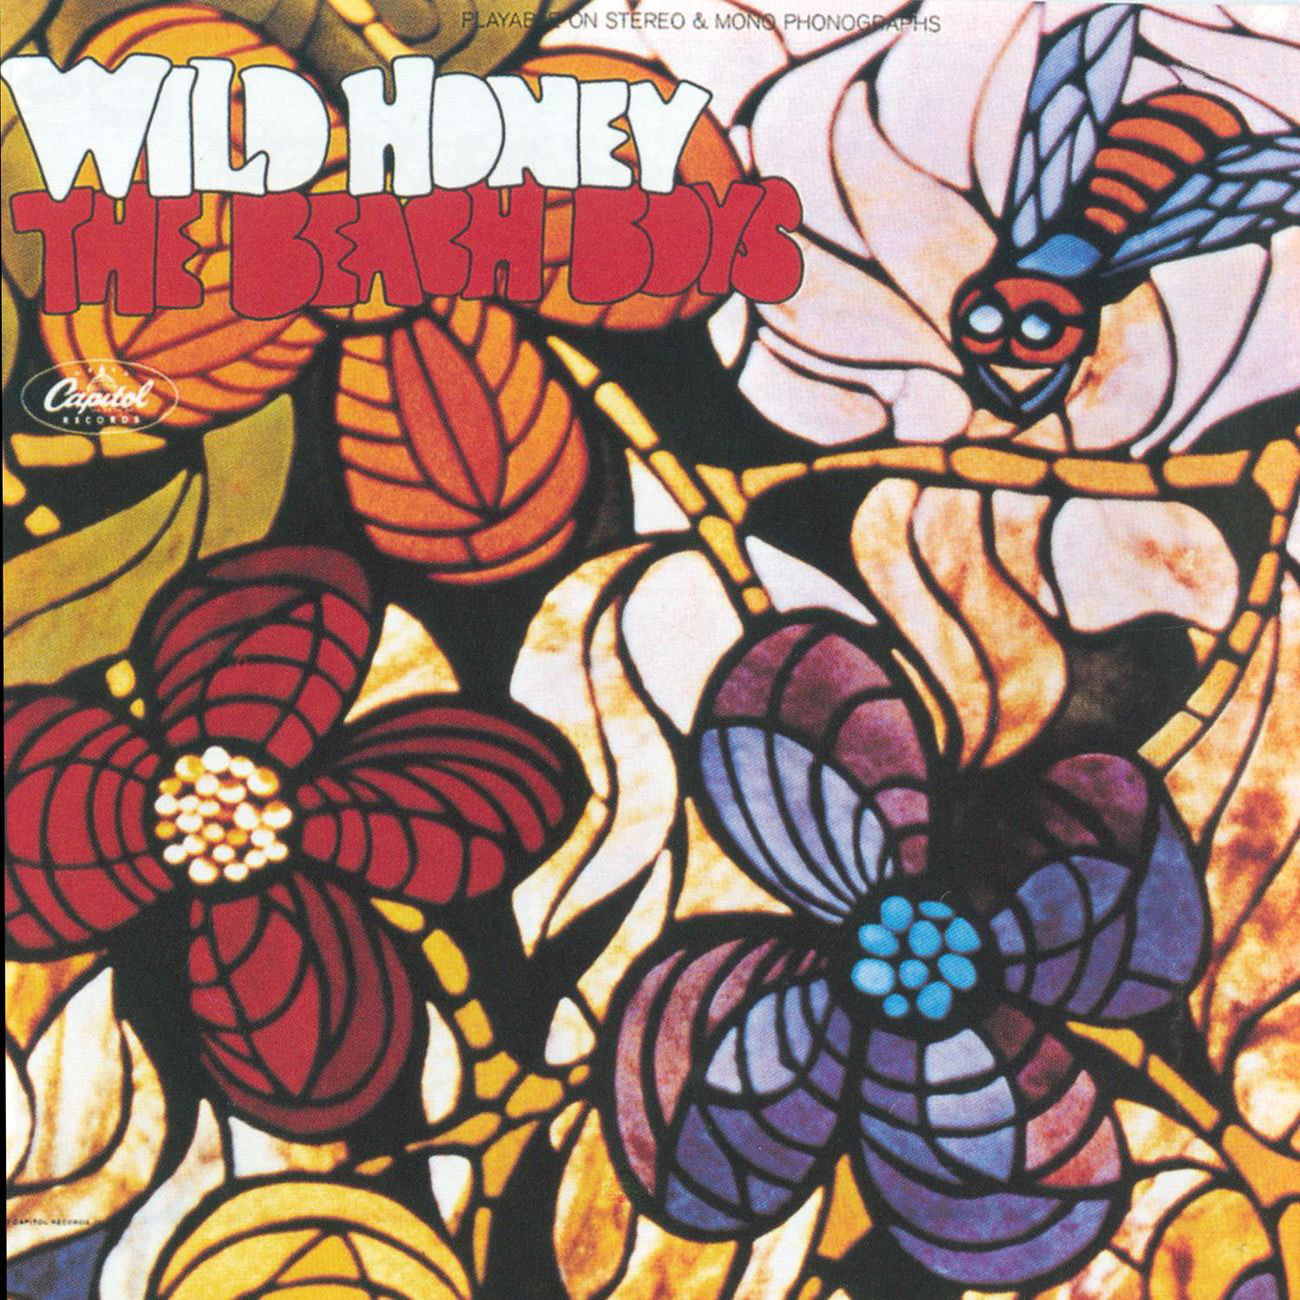 The Beach Boys – Wild Honey (Remastered)【44.1kHz／16bit】意大利区-OppsUpro音乐帝国